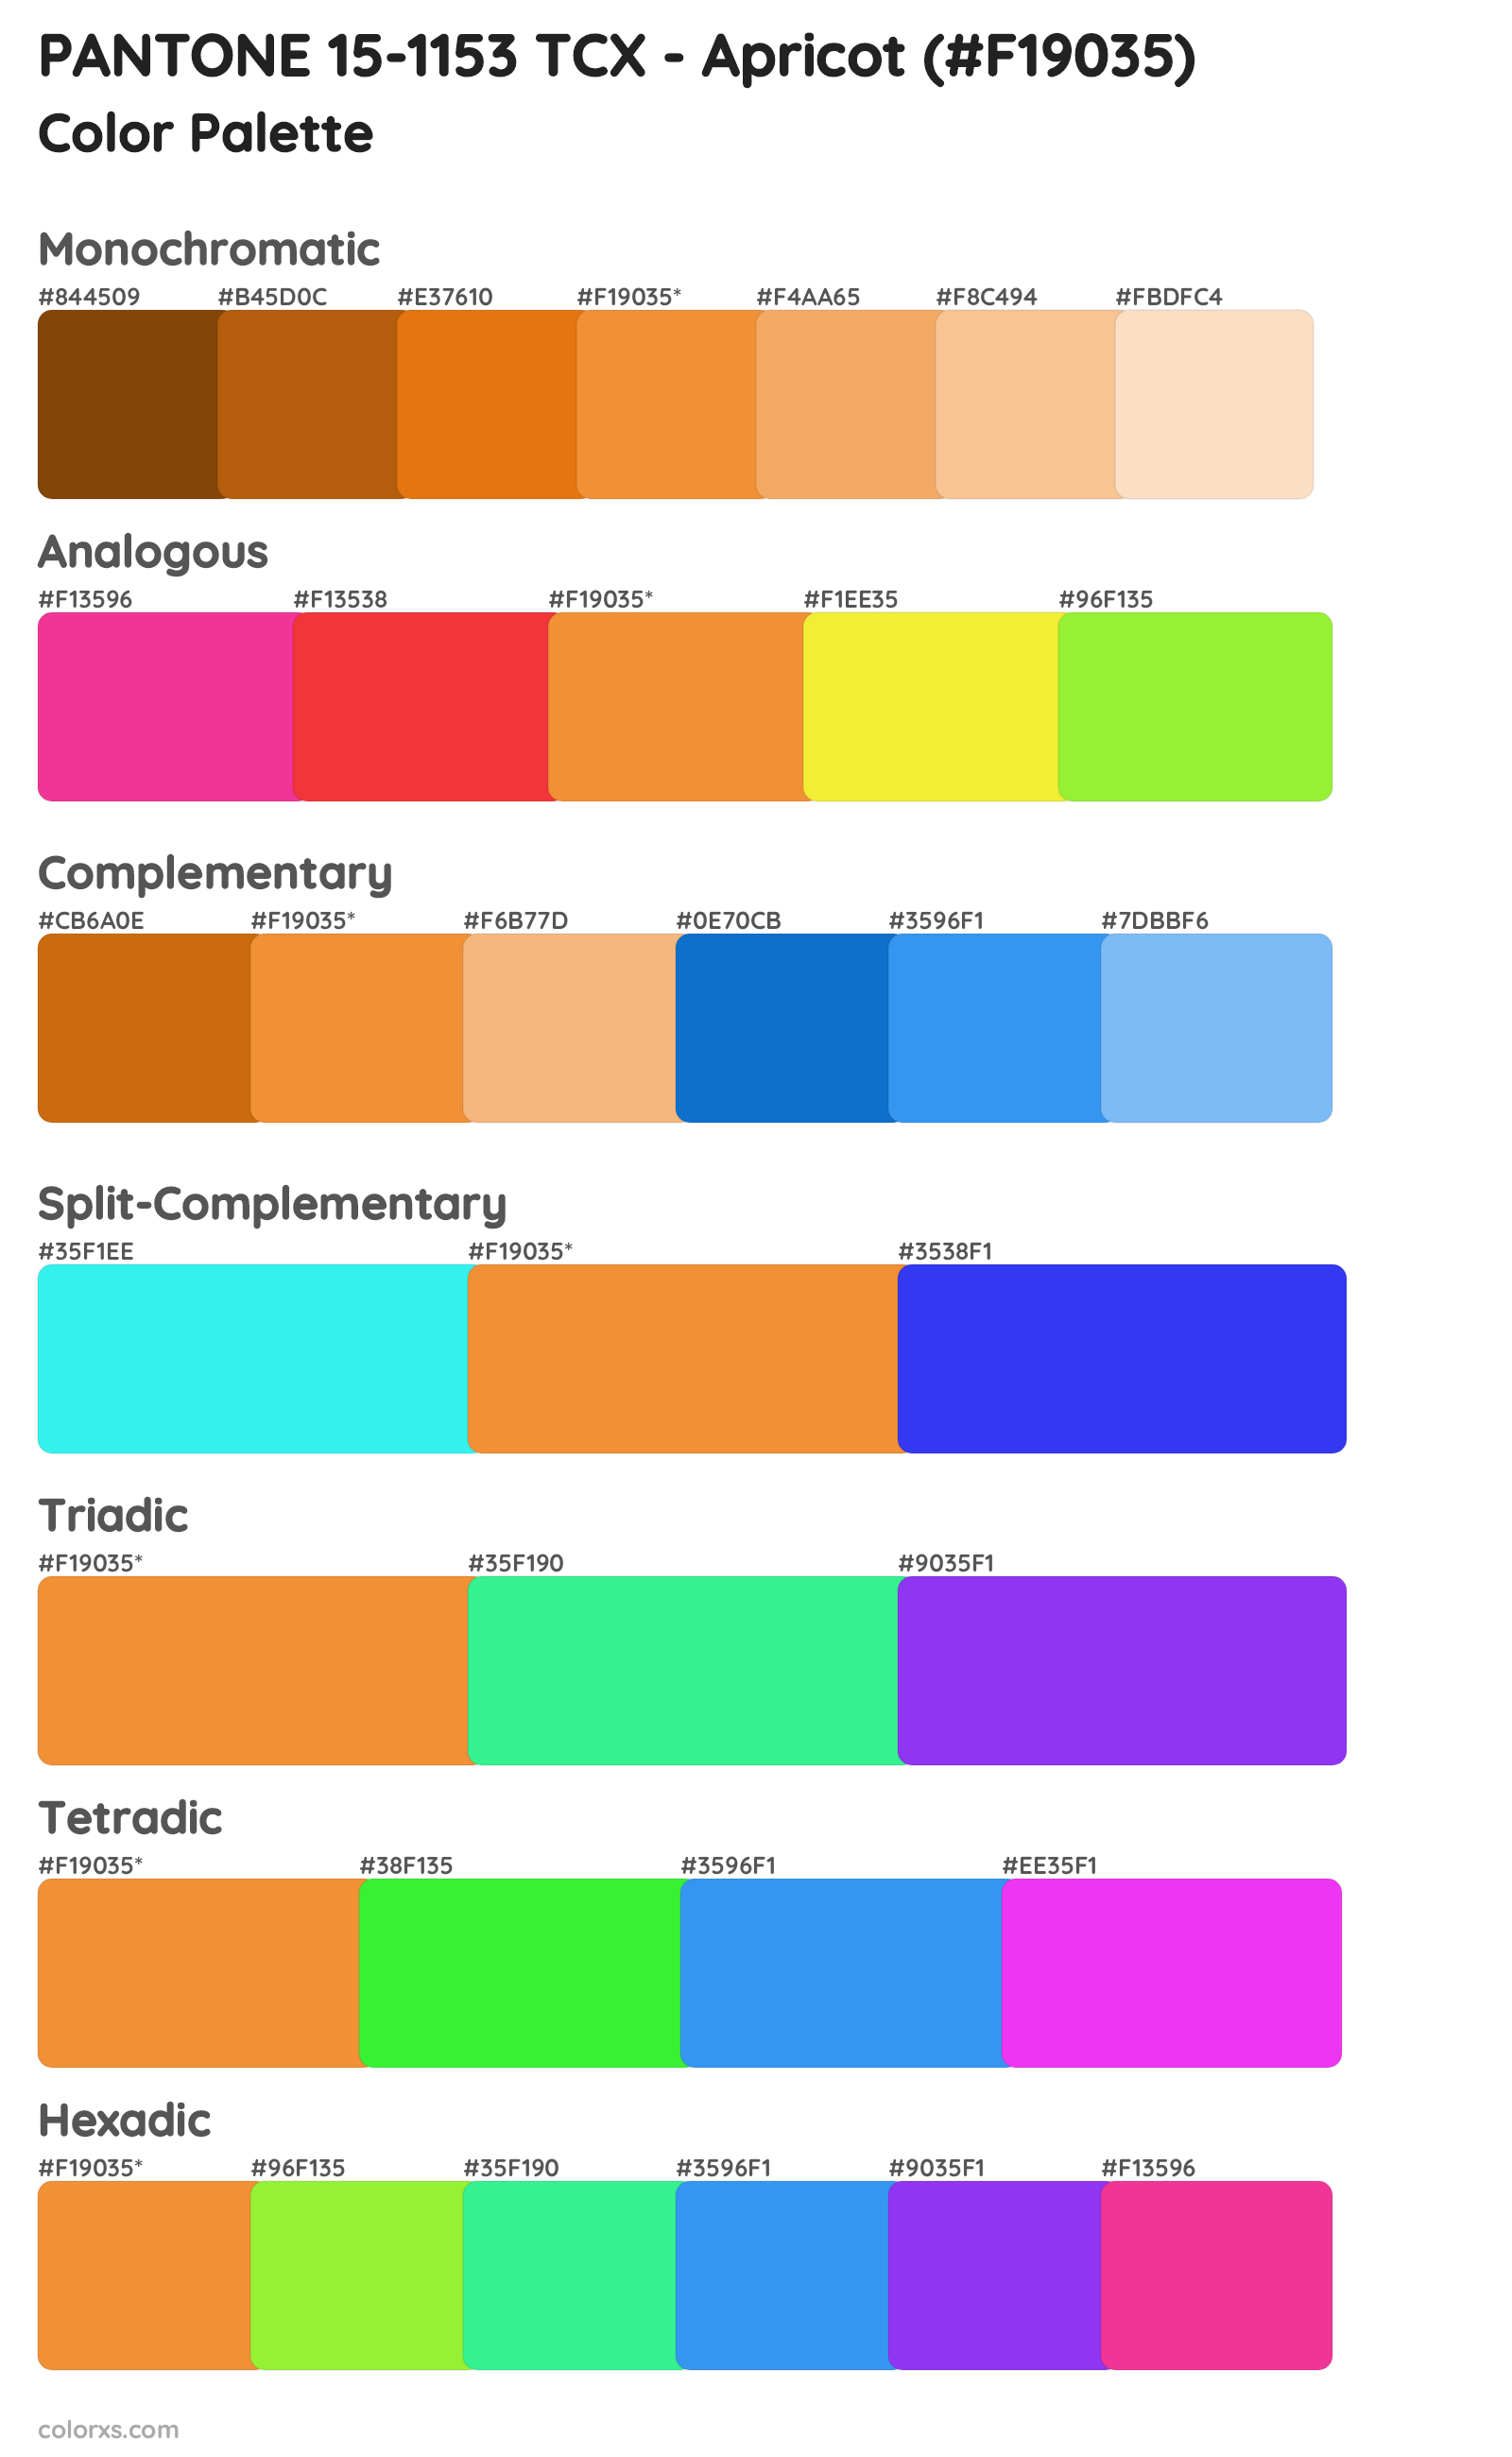 PANTONE 15-1153 TCX - Apricot Color Scheme Palettes